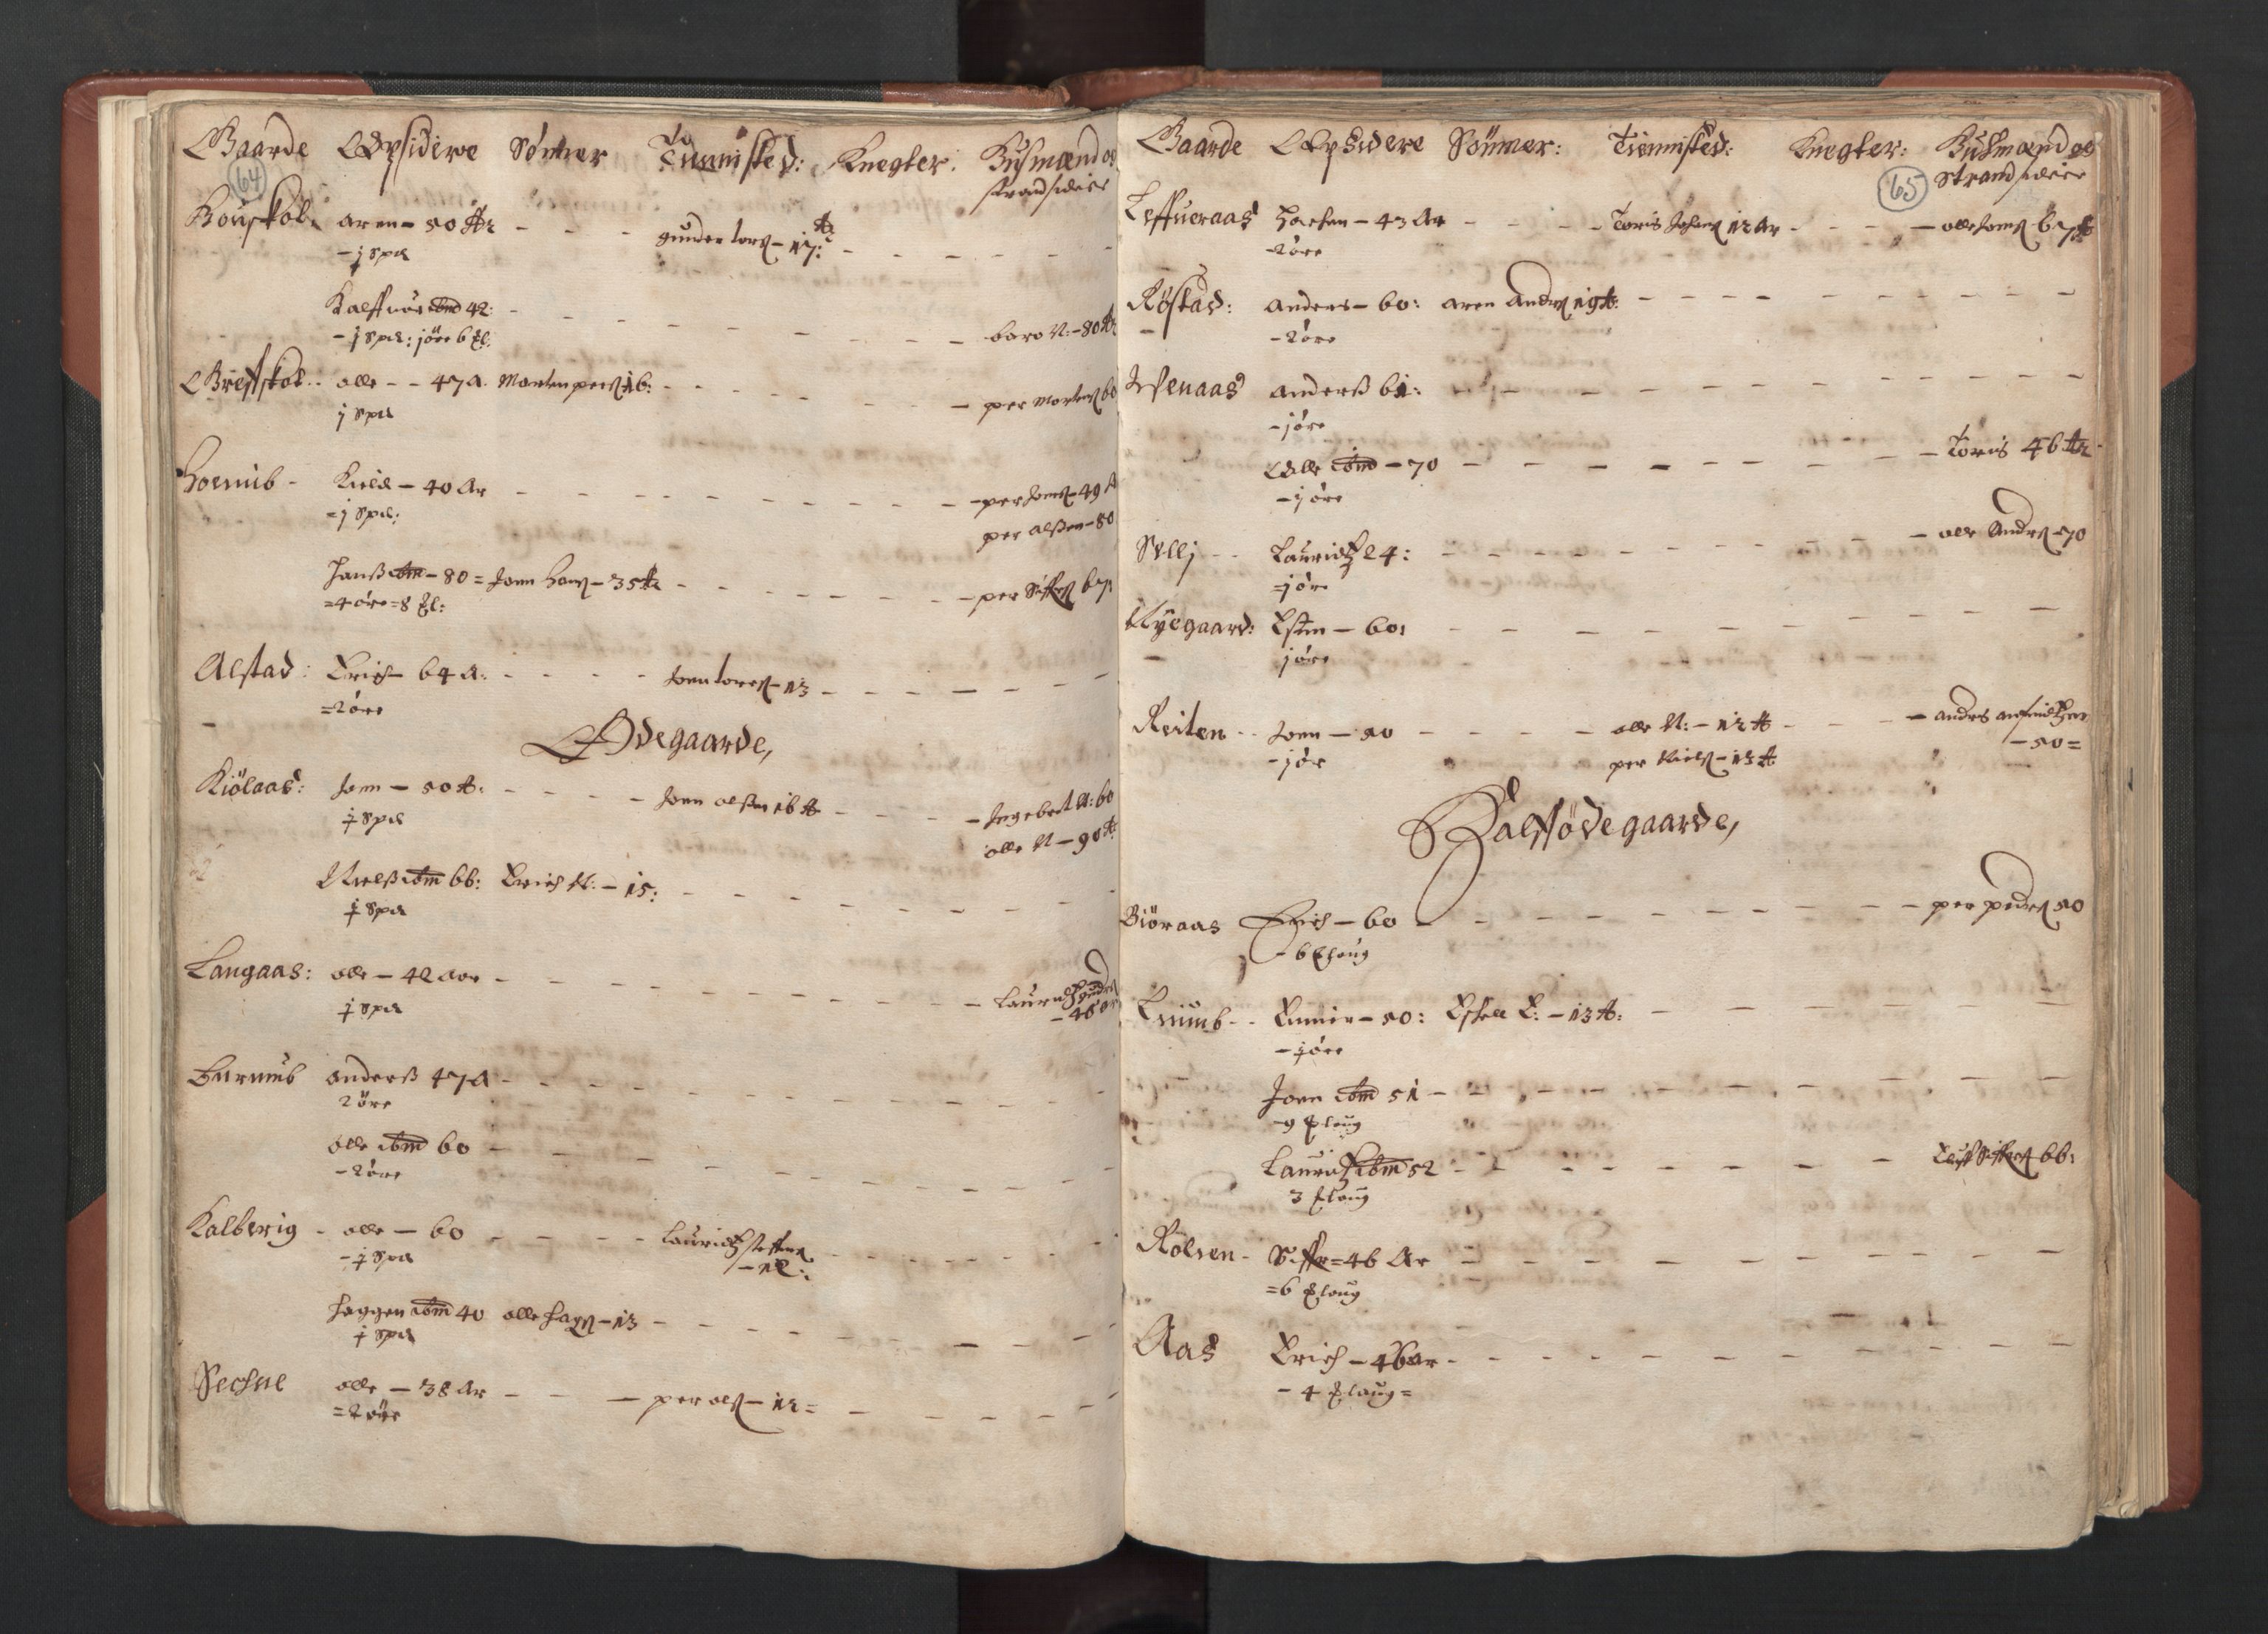 RA, Fogdenes og sorenskrivernes manntall 1664-1666, nr. 19: Fosen fogderi, Inderøy fogderi, Selbu fogderi, Namdal fogderi og Stjørdal fogderi, 1664-1665, s. 64-65